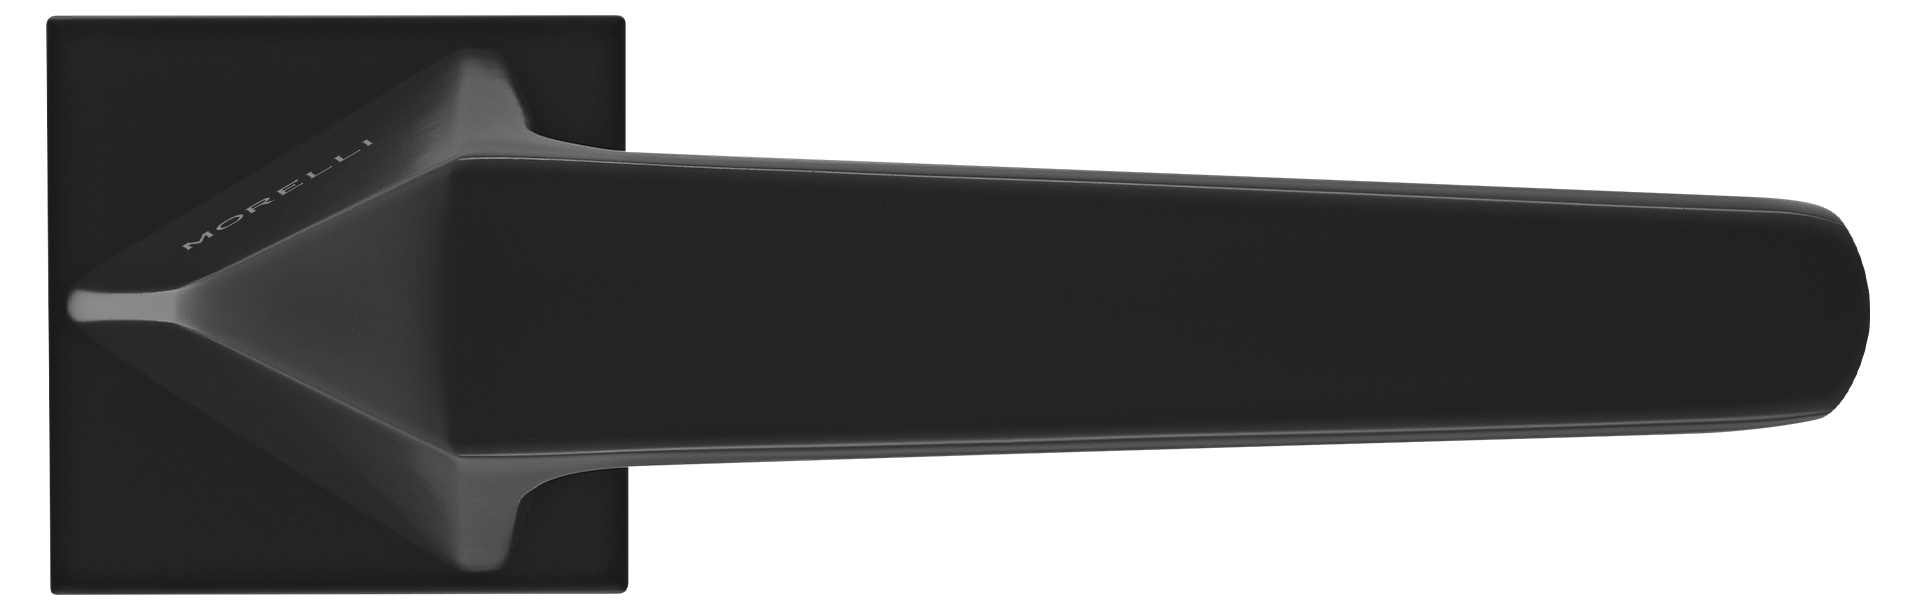 SOUK ручка дверная на квадратной розетке 6 мм, MH-55-S6 BL, цвет - черный фото купить в Рязани